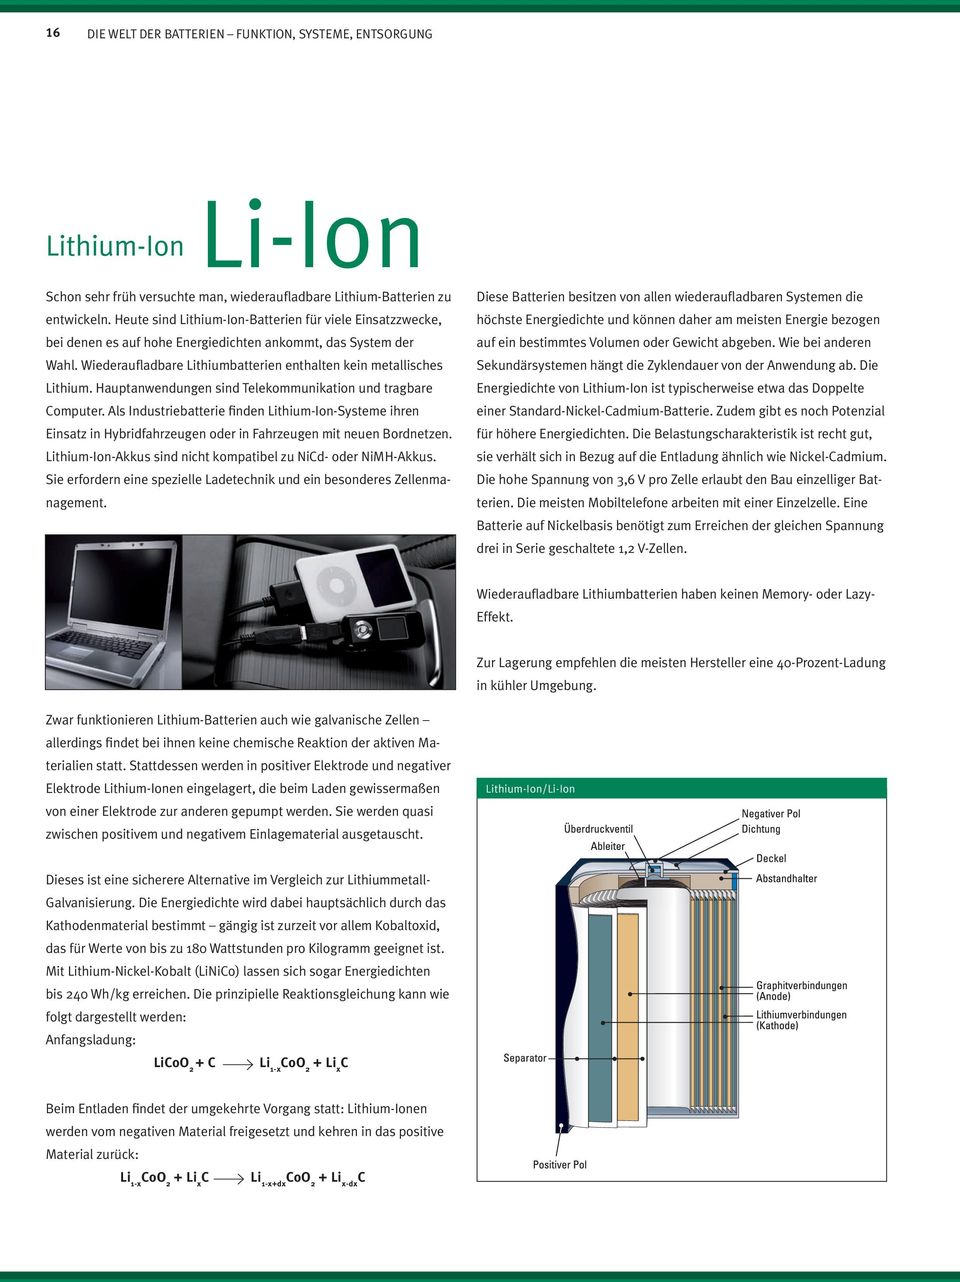 Wiederaufladbare Lithiumbatterien enthalten kein metallisches Lithium. Hauptanwendungen sind Telekommunikation und tragbare Computer.